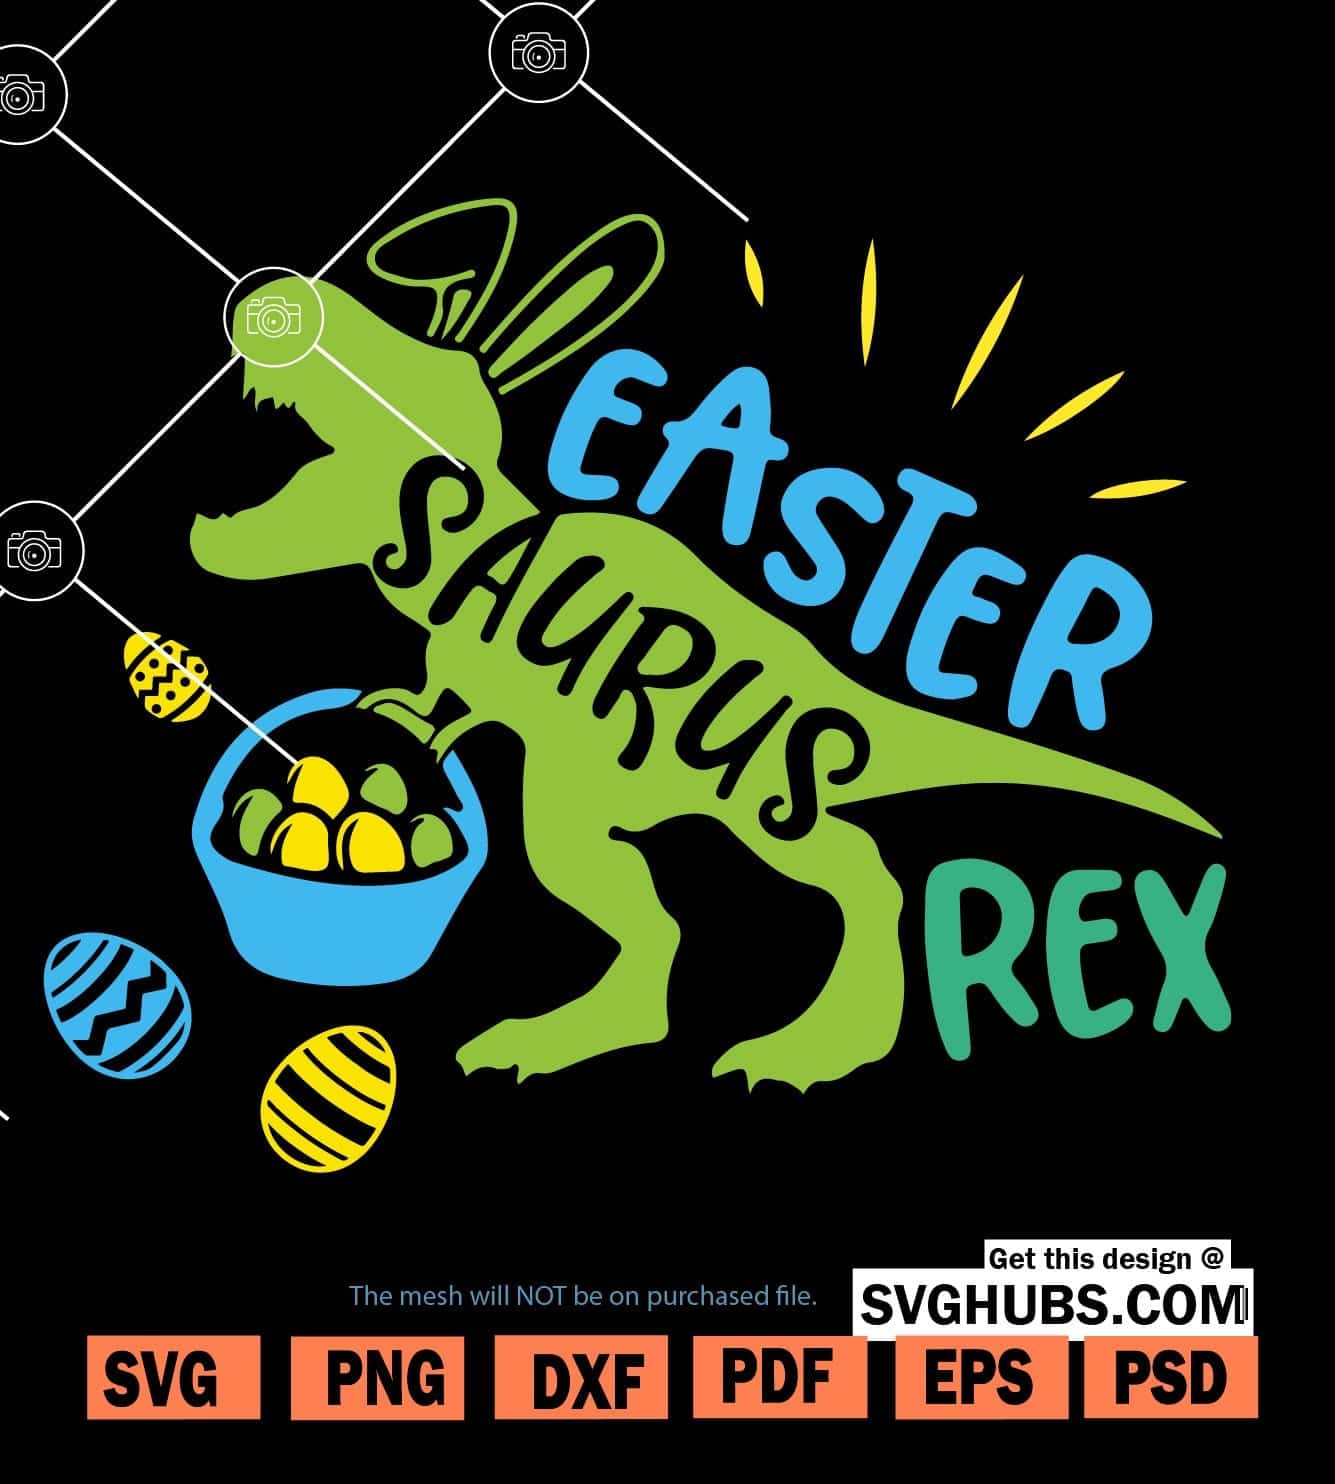 Easter rex svg, Easter dinosaur SVG, Easter Saurus SVG